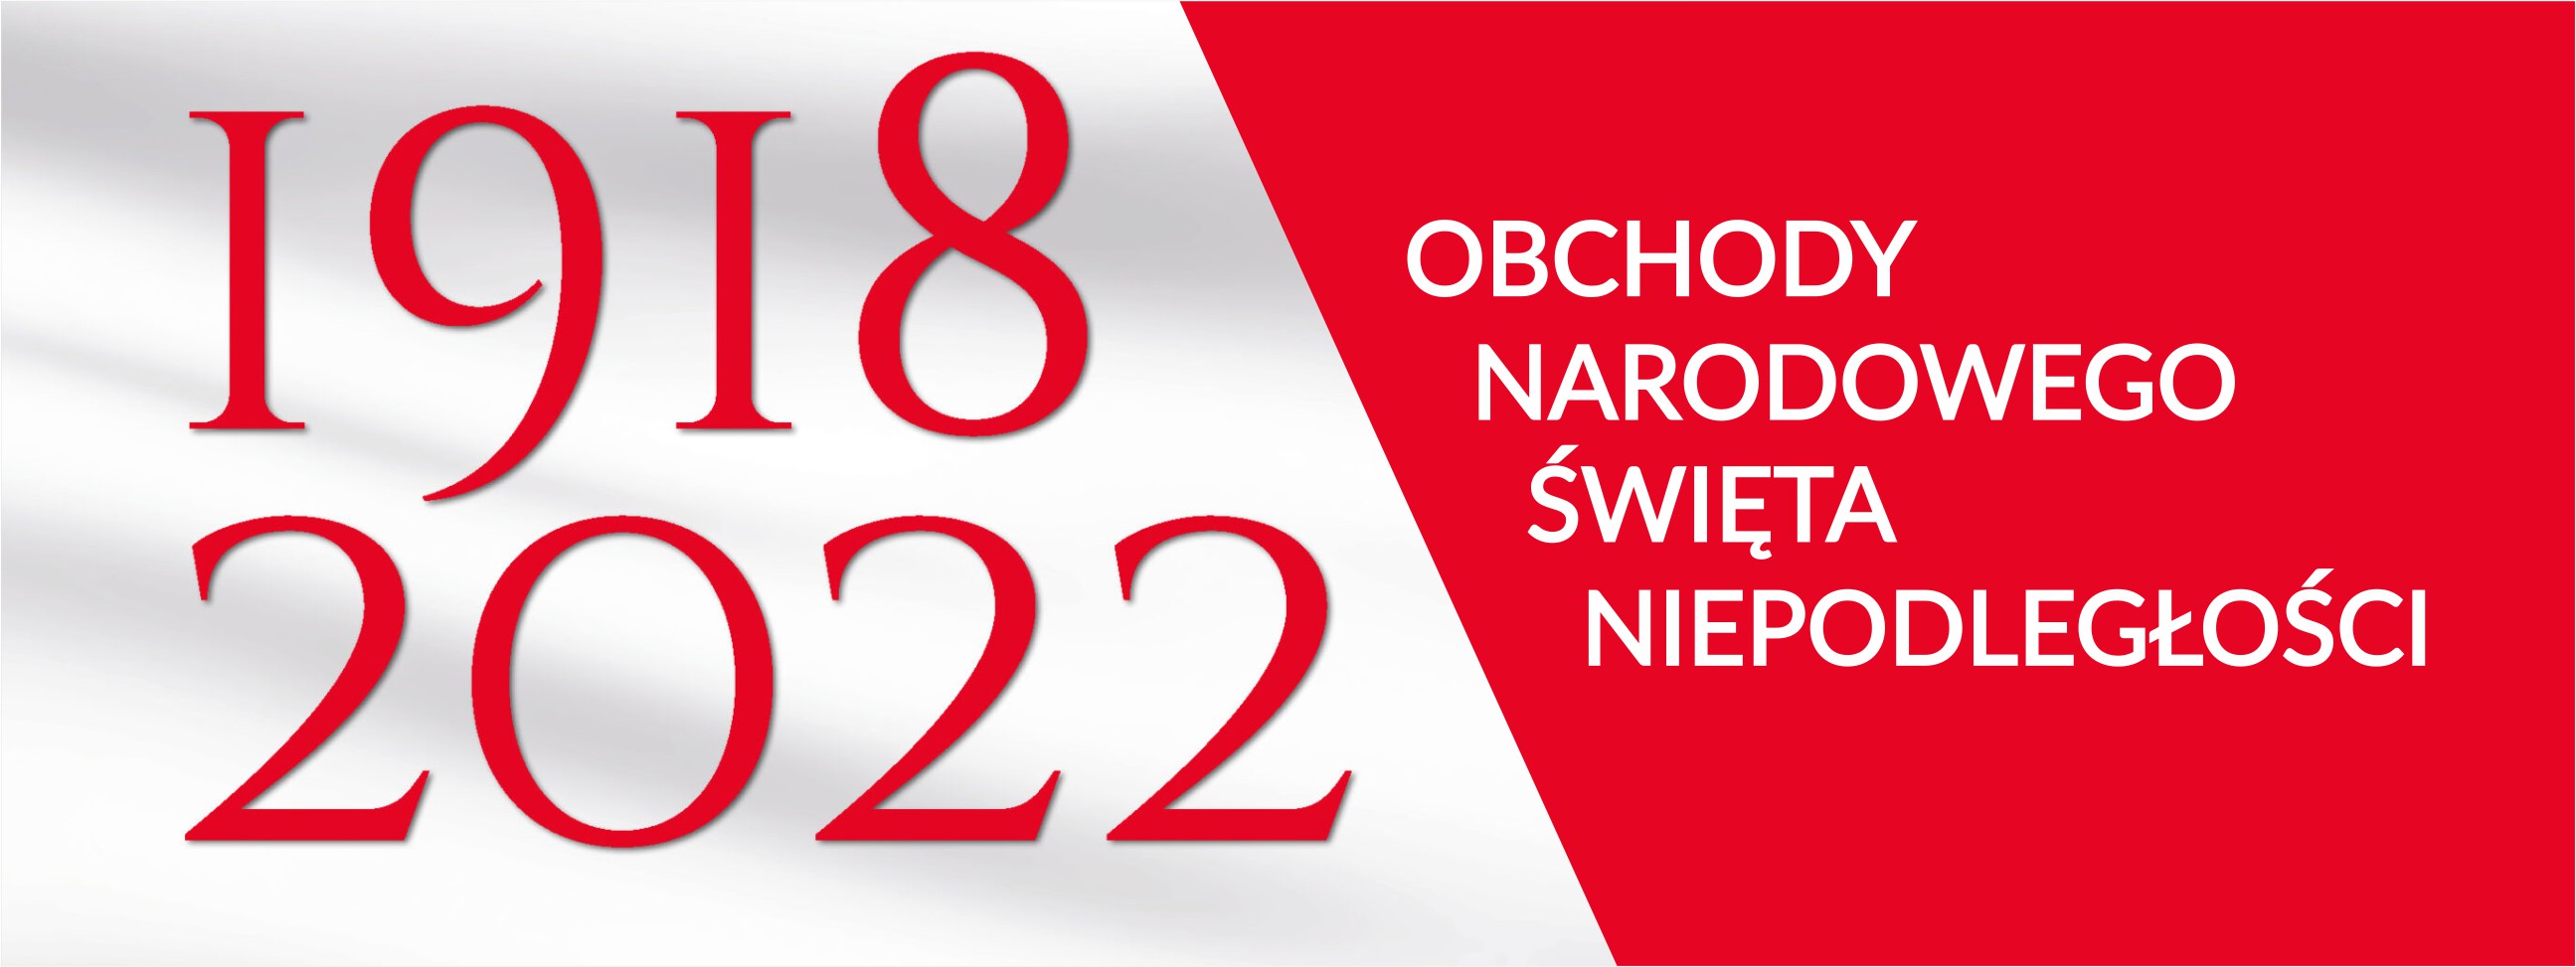 biało-czerwony baner z datami 1918 - 2022, Święto Niepodległości 